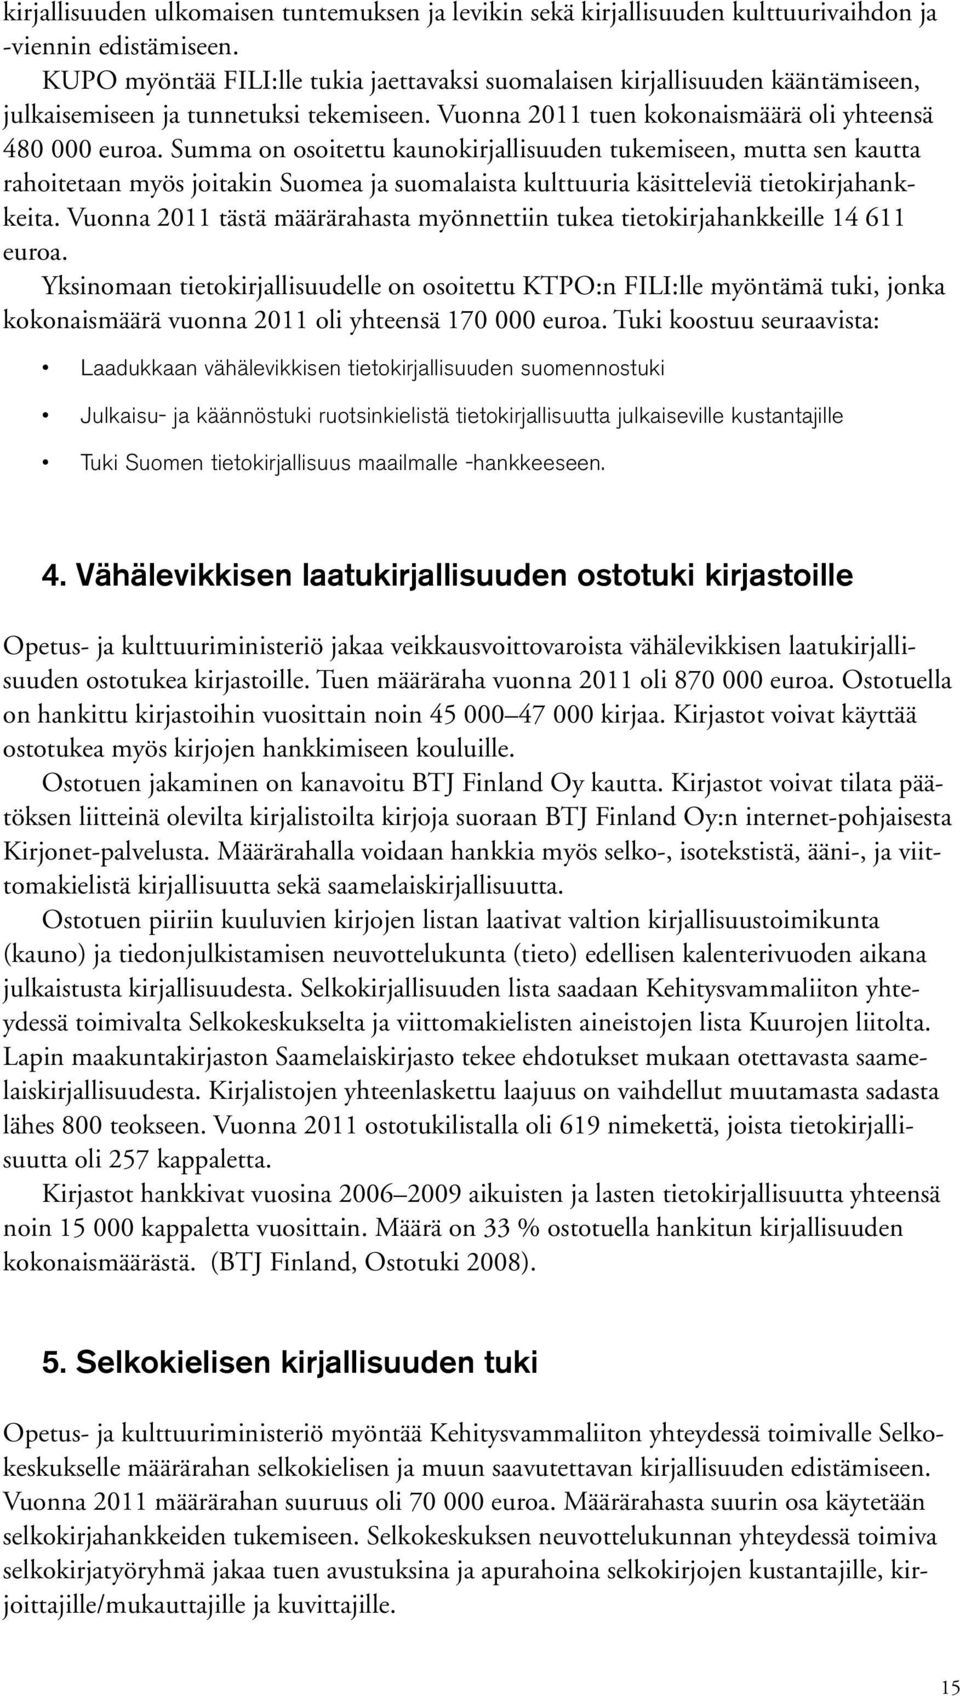 Summa on osoitettu kaunokirjallisuuden tukemiseen, mutta sen kautta rahoitetaan myös joitakin Suomea ja suomalaista kulttuuria käsitteleviä tietokirjahankkeita.